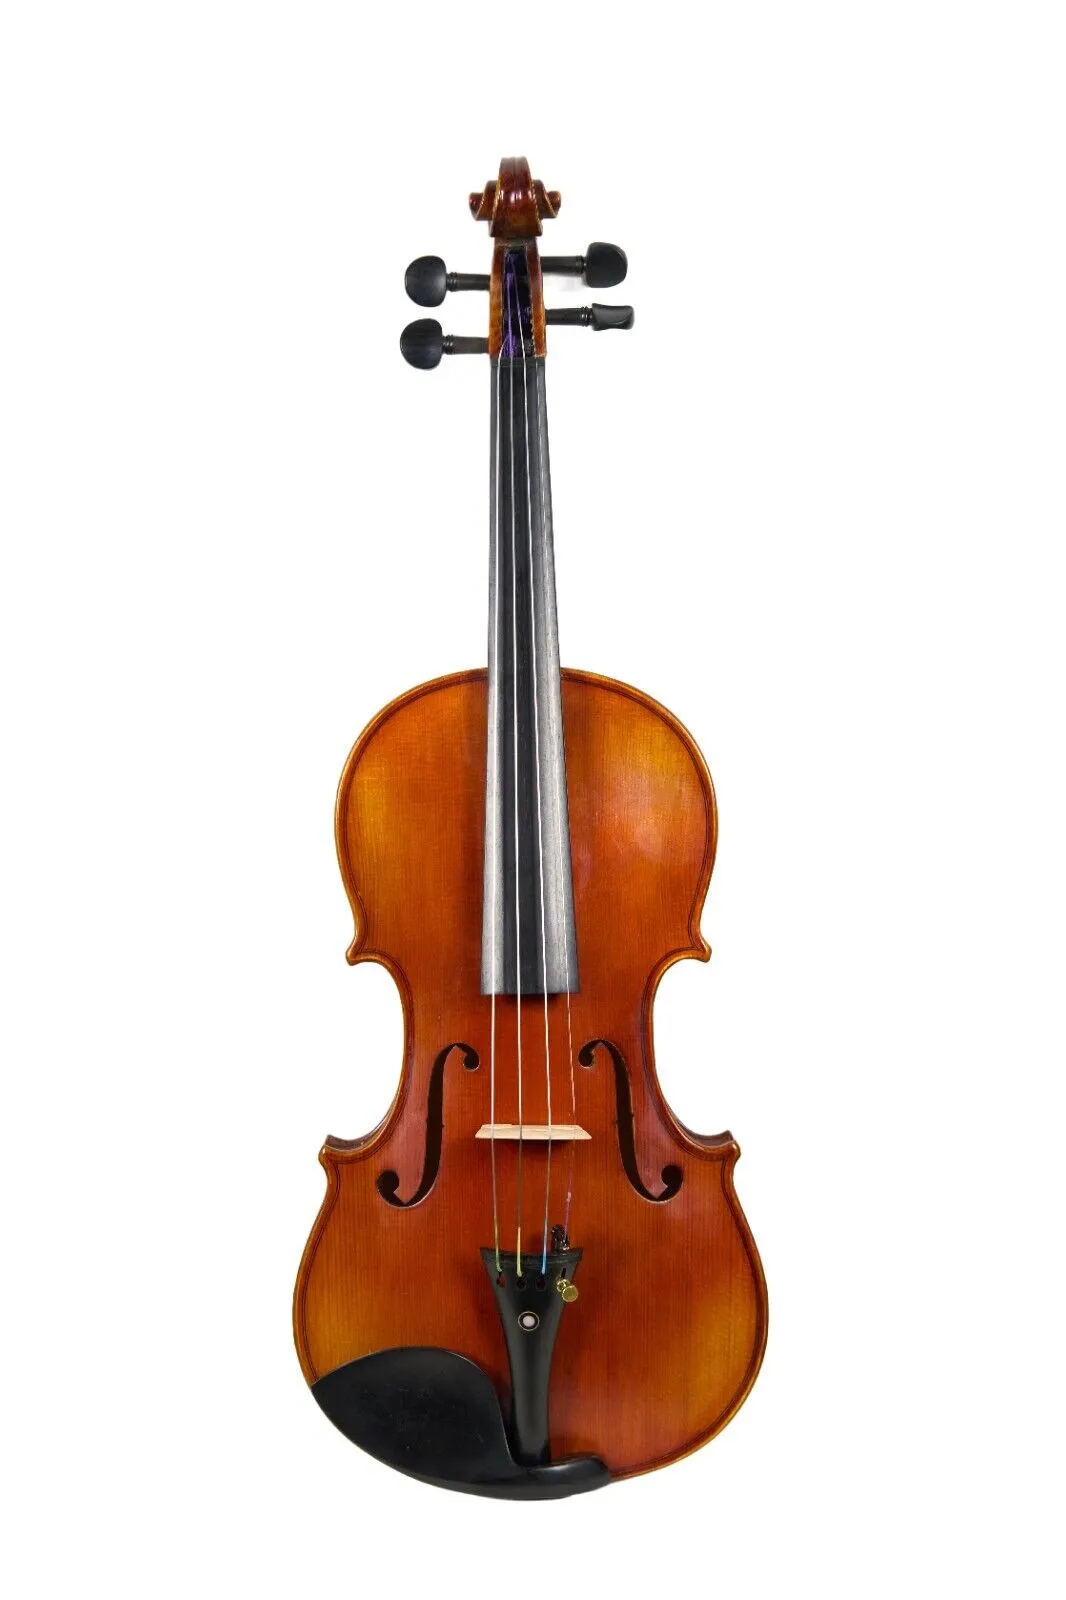 ストラッドコピーバイオリンフルサイズプロフェッショナルレベルバイオリンの傑作リッチサウンド